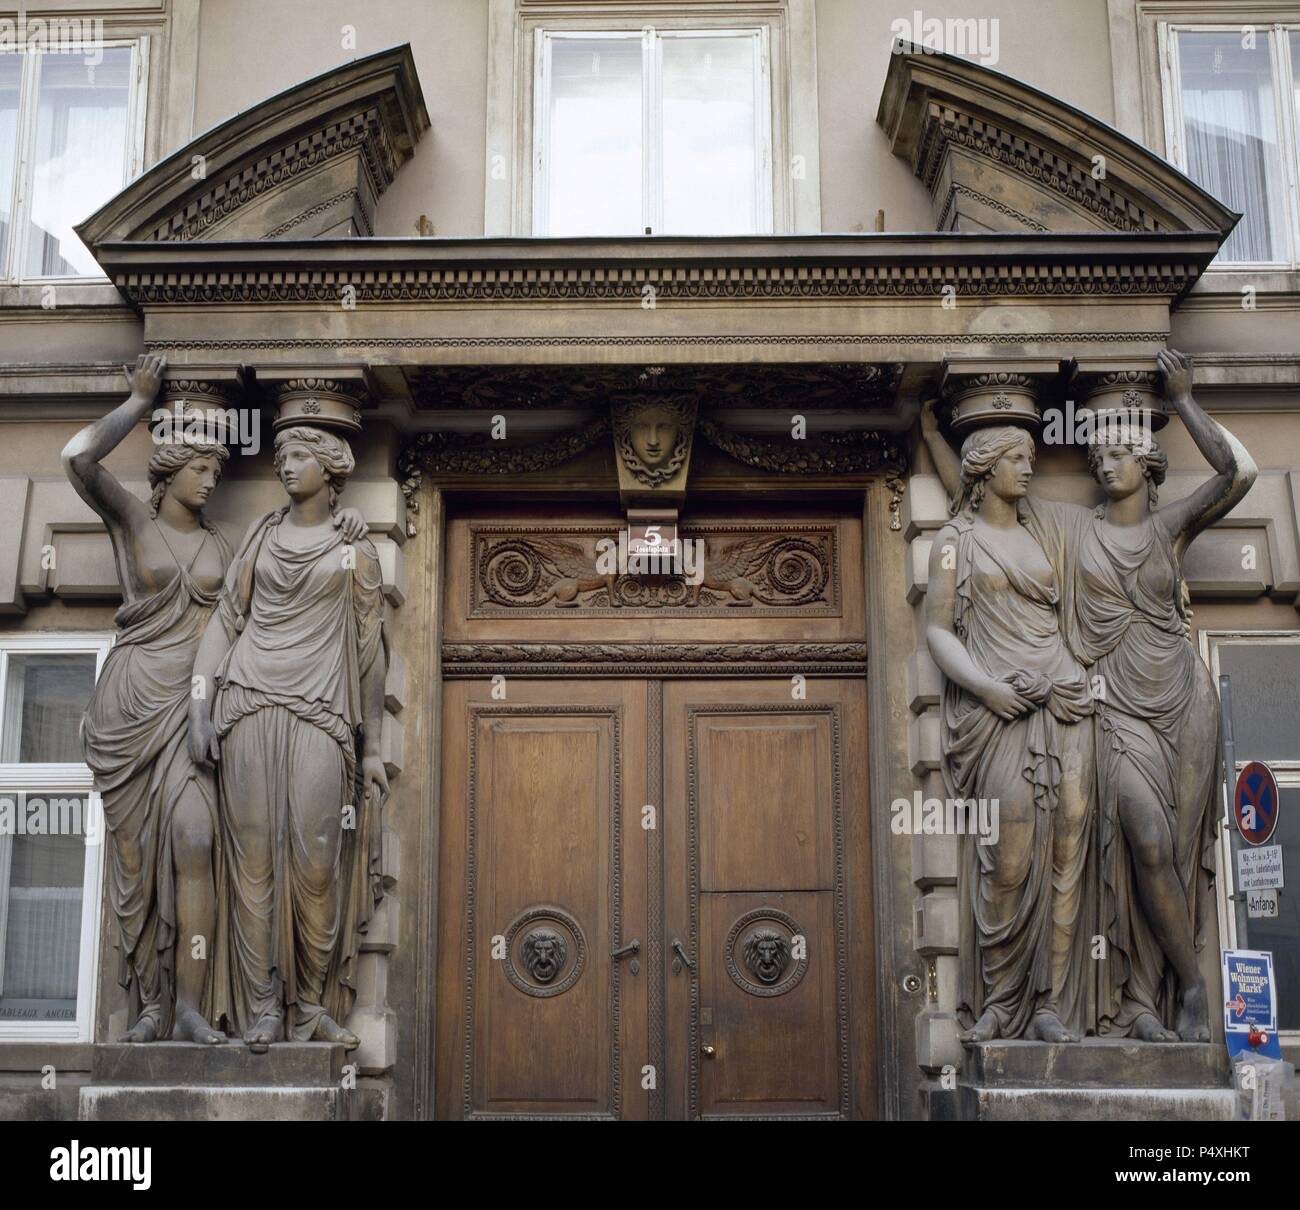 ARTE S. XVIII. AUSTRIA. HOHENBERG, Ferdinand von. PALACIO PALLAVICINI (1783-1784). Detalle de la fachada de este edificio, mezcla de barroco y neoclásico, en el número 5 de Josefsplatz, frente al Hofburg. A ambos lados de la puerta destacan dos esculturas representando unas CARIATIDES. VIENA. Stock Photo